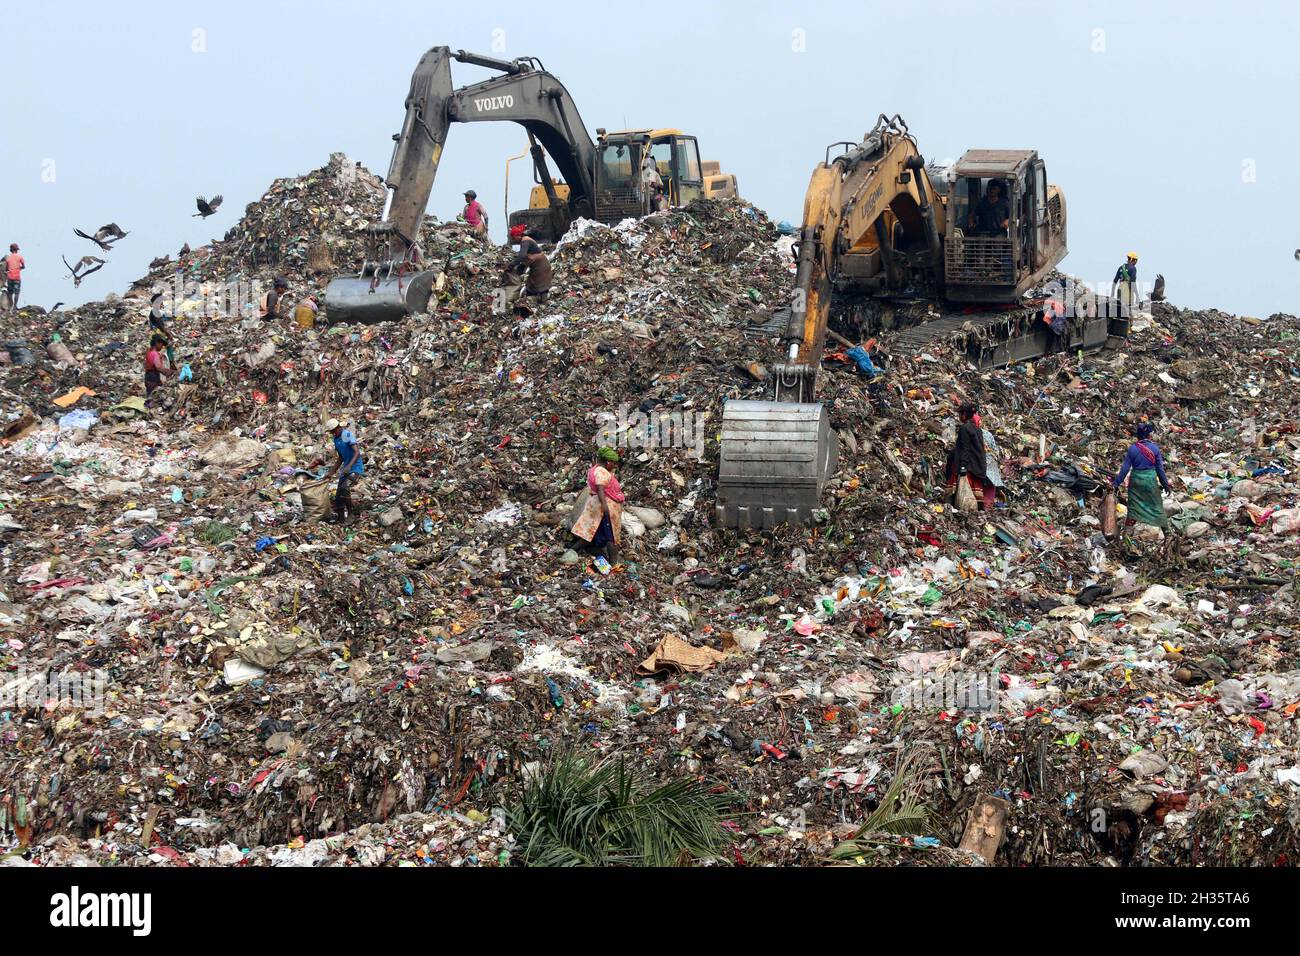 Menschen Müllsammler pflücken den nicht biologisch abbaubaren Abfall, der für die Recyclingindustrie verwendet werden soll, auf einer Müllhalde in Dhaka viele Menschen leben davon, Abfälle aus den Bergen von Müll zu sammeln, die täglich entstehen, vor allem aus der Hauptstadt Dhaka. Bangladesch, das achtbevölkerungsreichste Land der Welt, hat derzeit ein ernstes Verschmutzungsproblem, da die Abfallproduktion in den städtischen Gebieten von Bangladesch etwa 25,000 Tonnen pro Tag beträgt, was übersetzt heißt. Die Stadt Dhaka produziert ein Viertel aller Siedlungsabfälle im Land. Der gesamte Abfallaufkommen in den Städten soll auf bis zu 47,000 Tonnen pro Jahr ansteigen Stockfoto